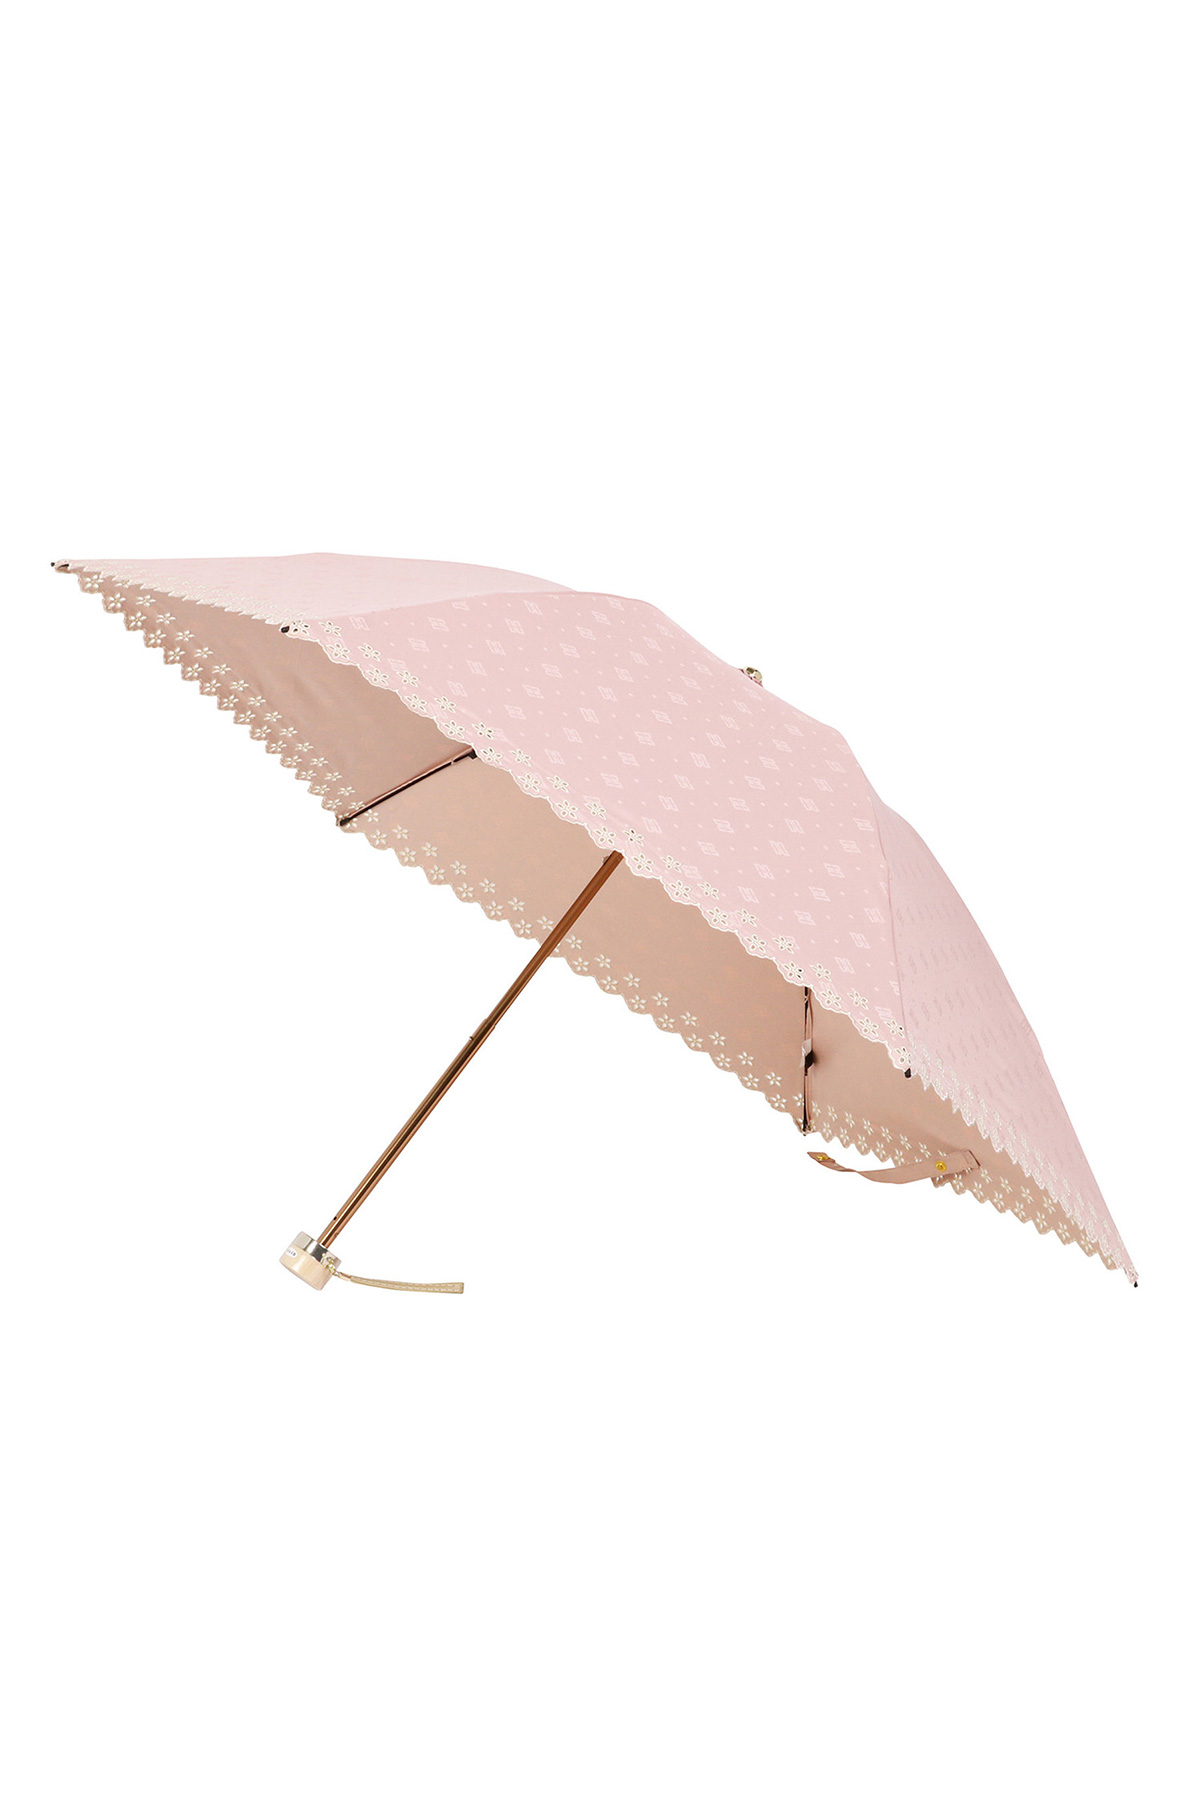 【日傘】ミニ折りたたみ傘ジャカード刺繍 詳細画像 2